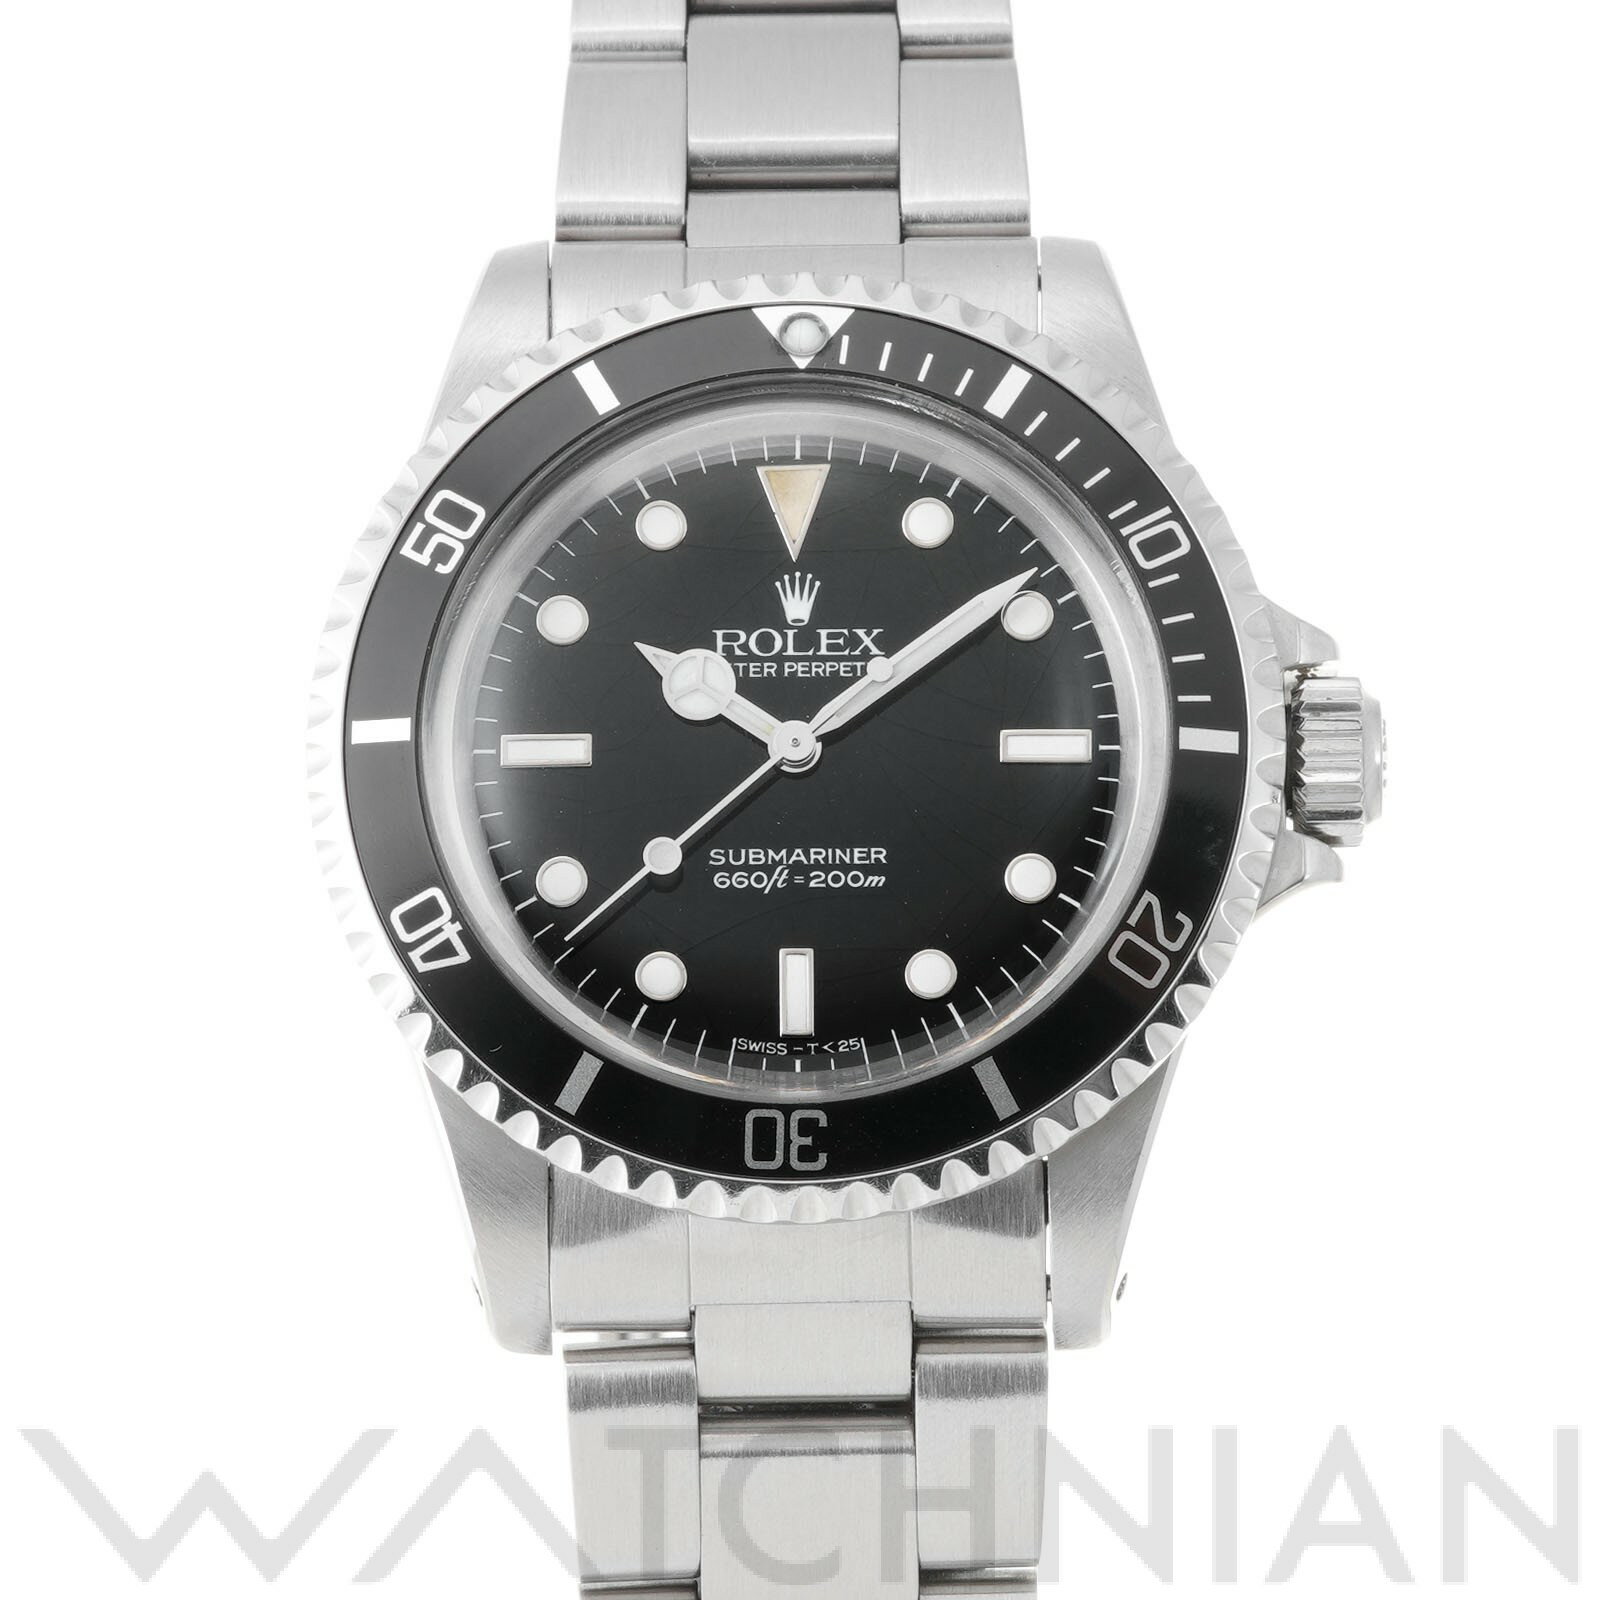 【中古】 ロレックス ROLEX サブマリーナ 5513 89番台(1985年頃製造) ブラック メンズ 腕時計